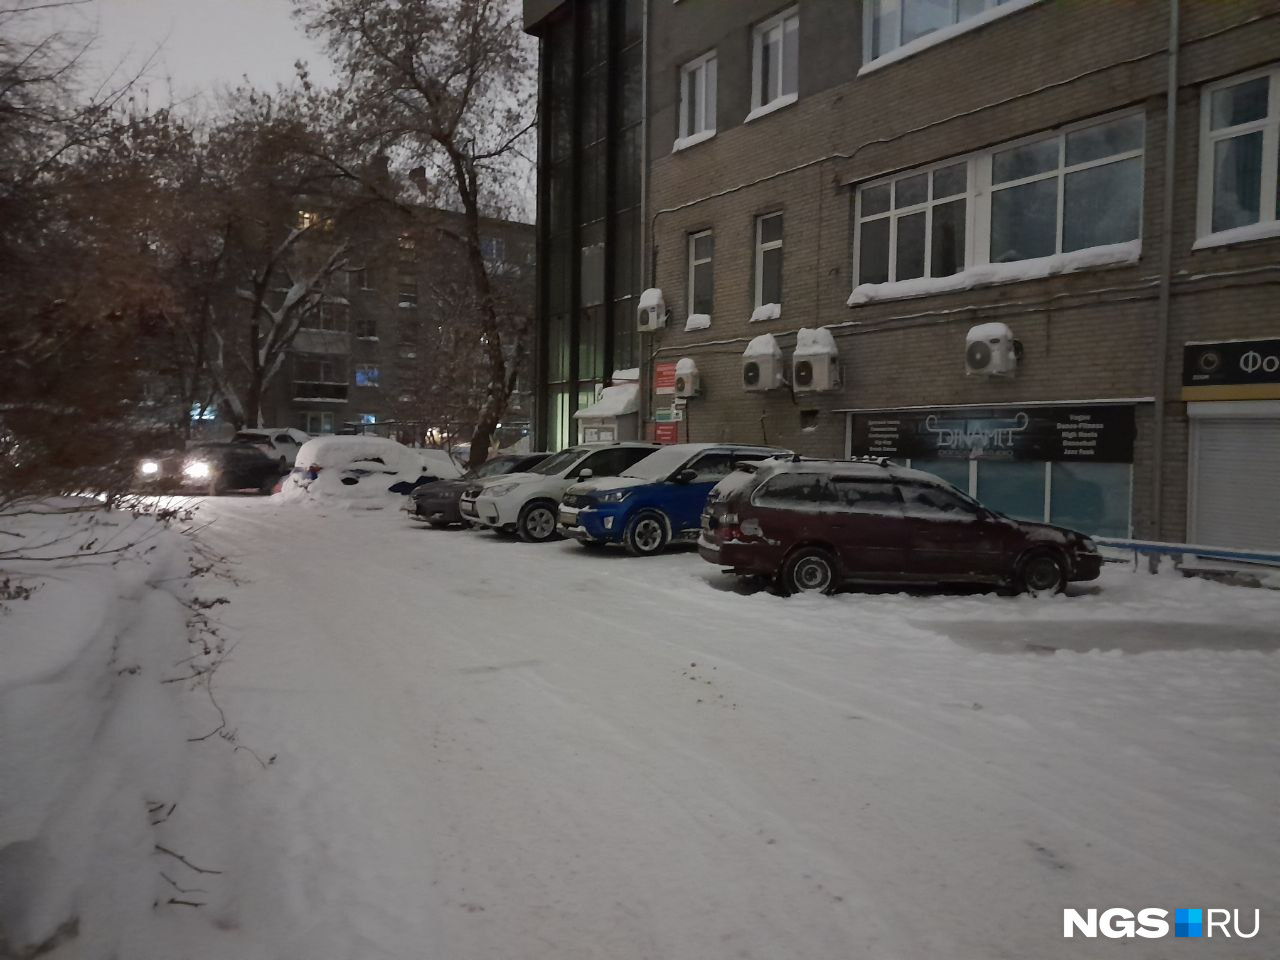 Некоторые автовладельцы долго не чистили свои машины от снега